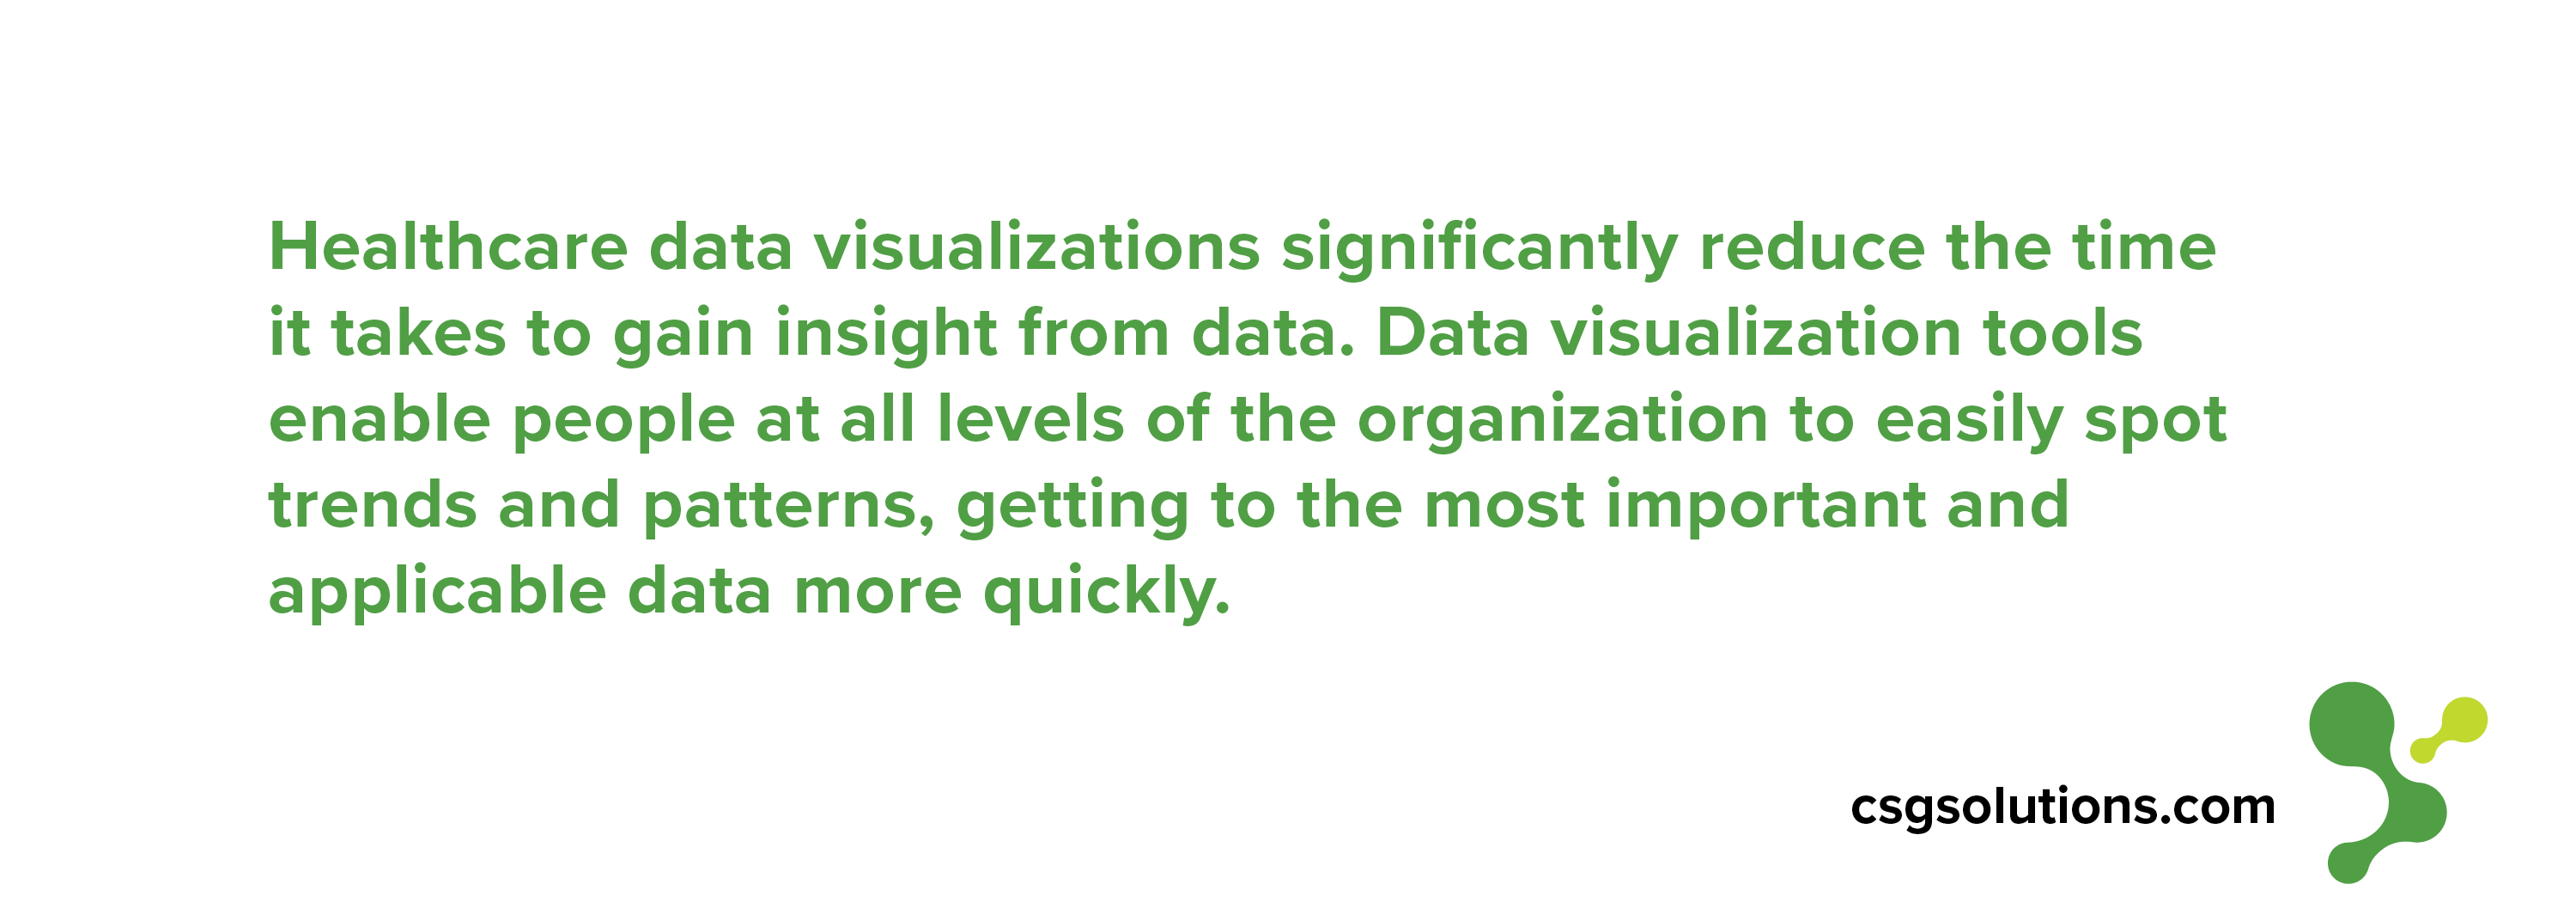 Healthcare Data Visualization 2